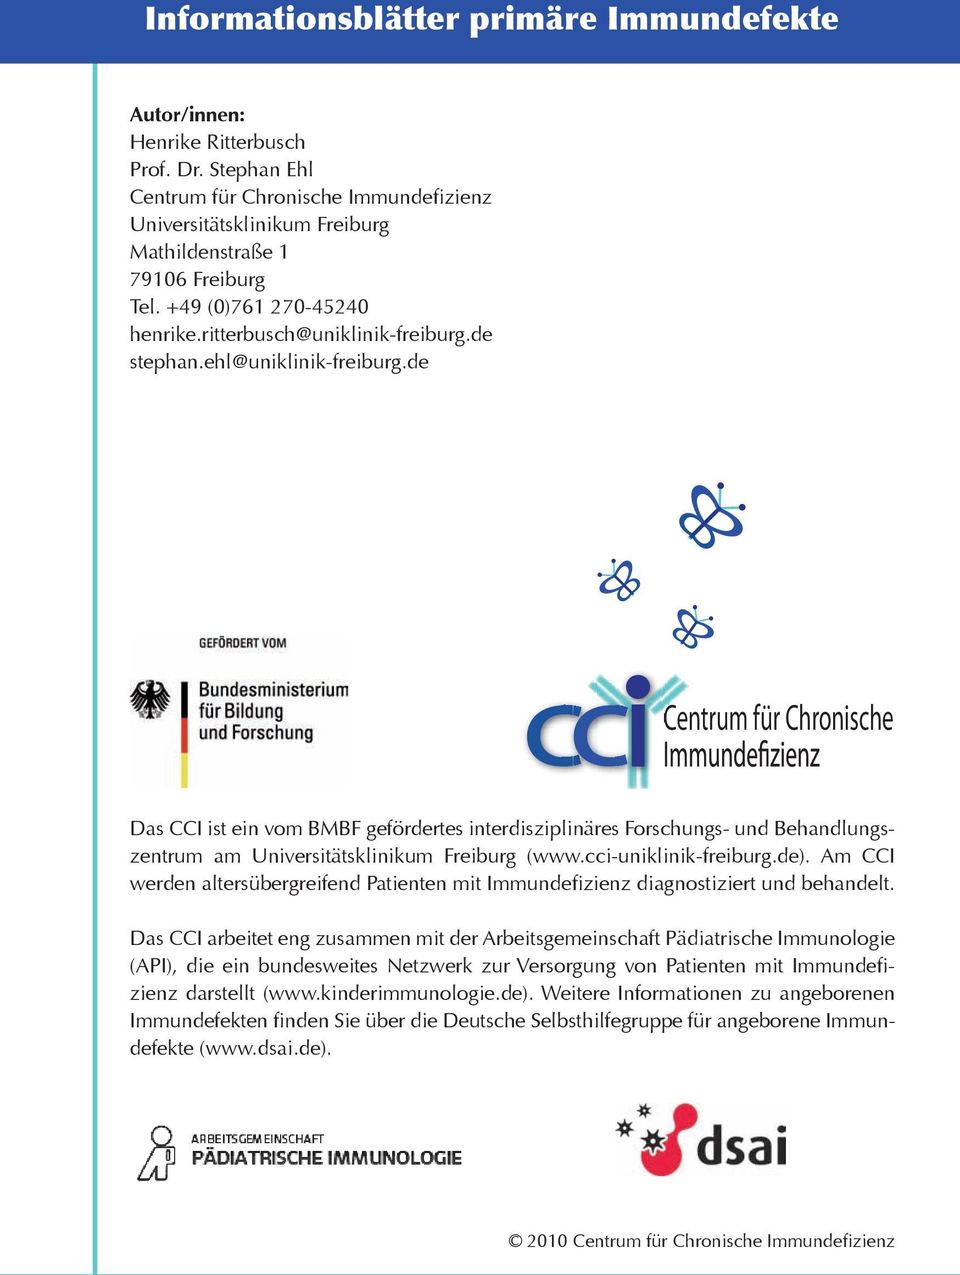 de CCI Centrum für Chronische Das CCI ist ein vom BMBF gefördertes interdisziplinäres Forschungs- und Behandlungszentrum am Universitätsklinikum Freiburg (www.cci-uniklinik-freiburg.de).